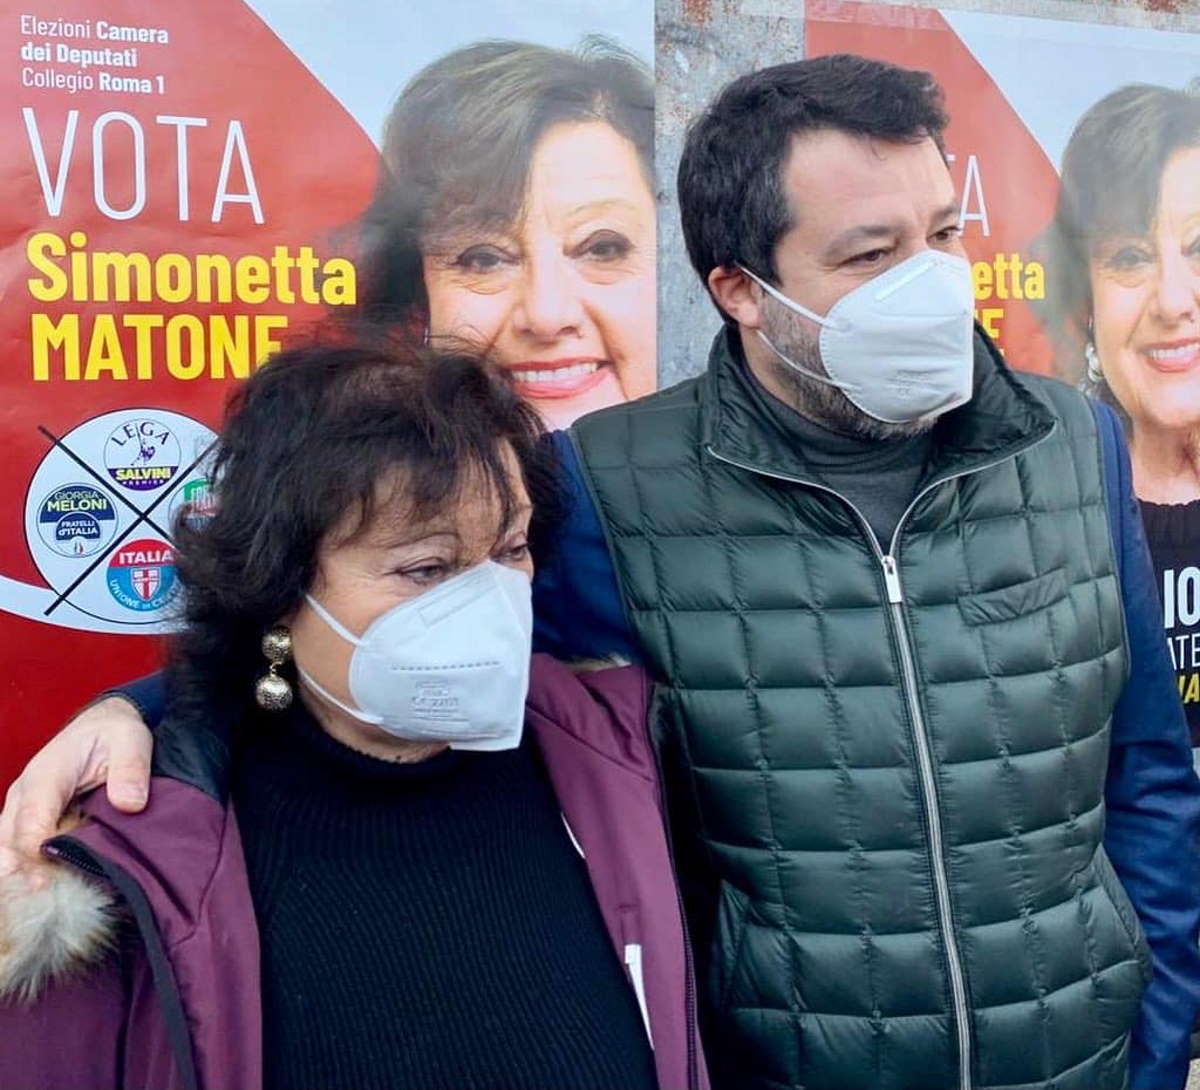 La strana logica di Matteo Salvini, senatore lombardo eletto in Calabria